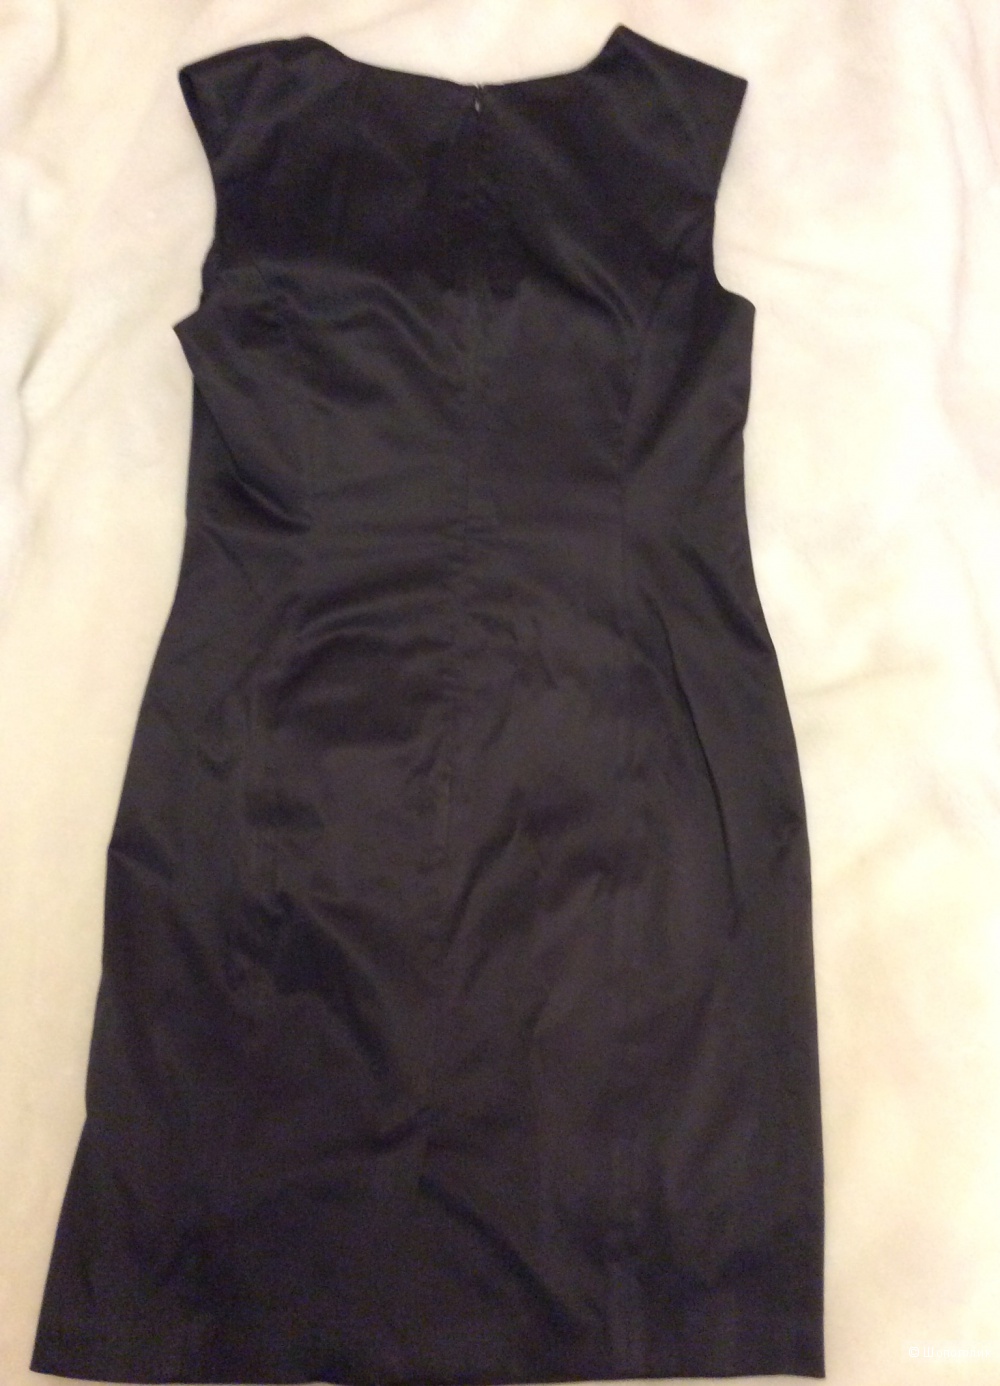 Джинсовая куртка Ralph Lauren, рос.размер 46-48 + платье Esprit.